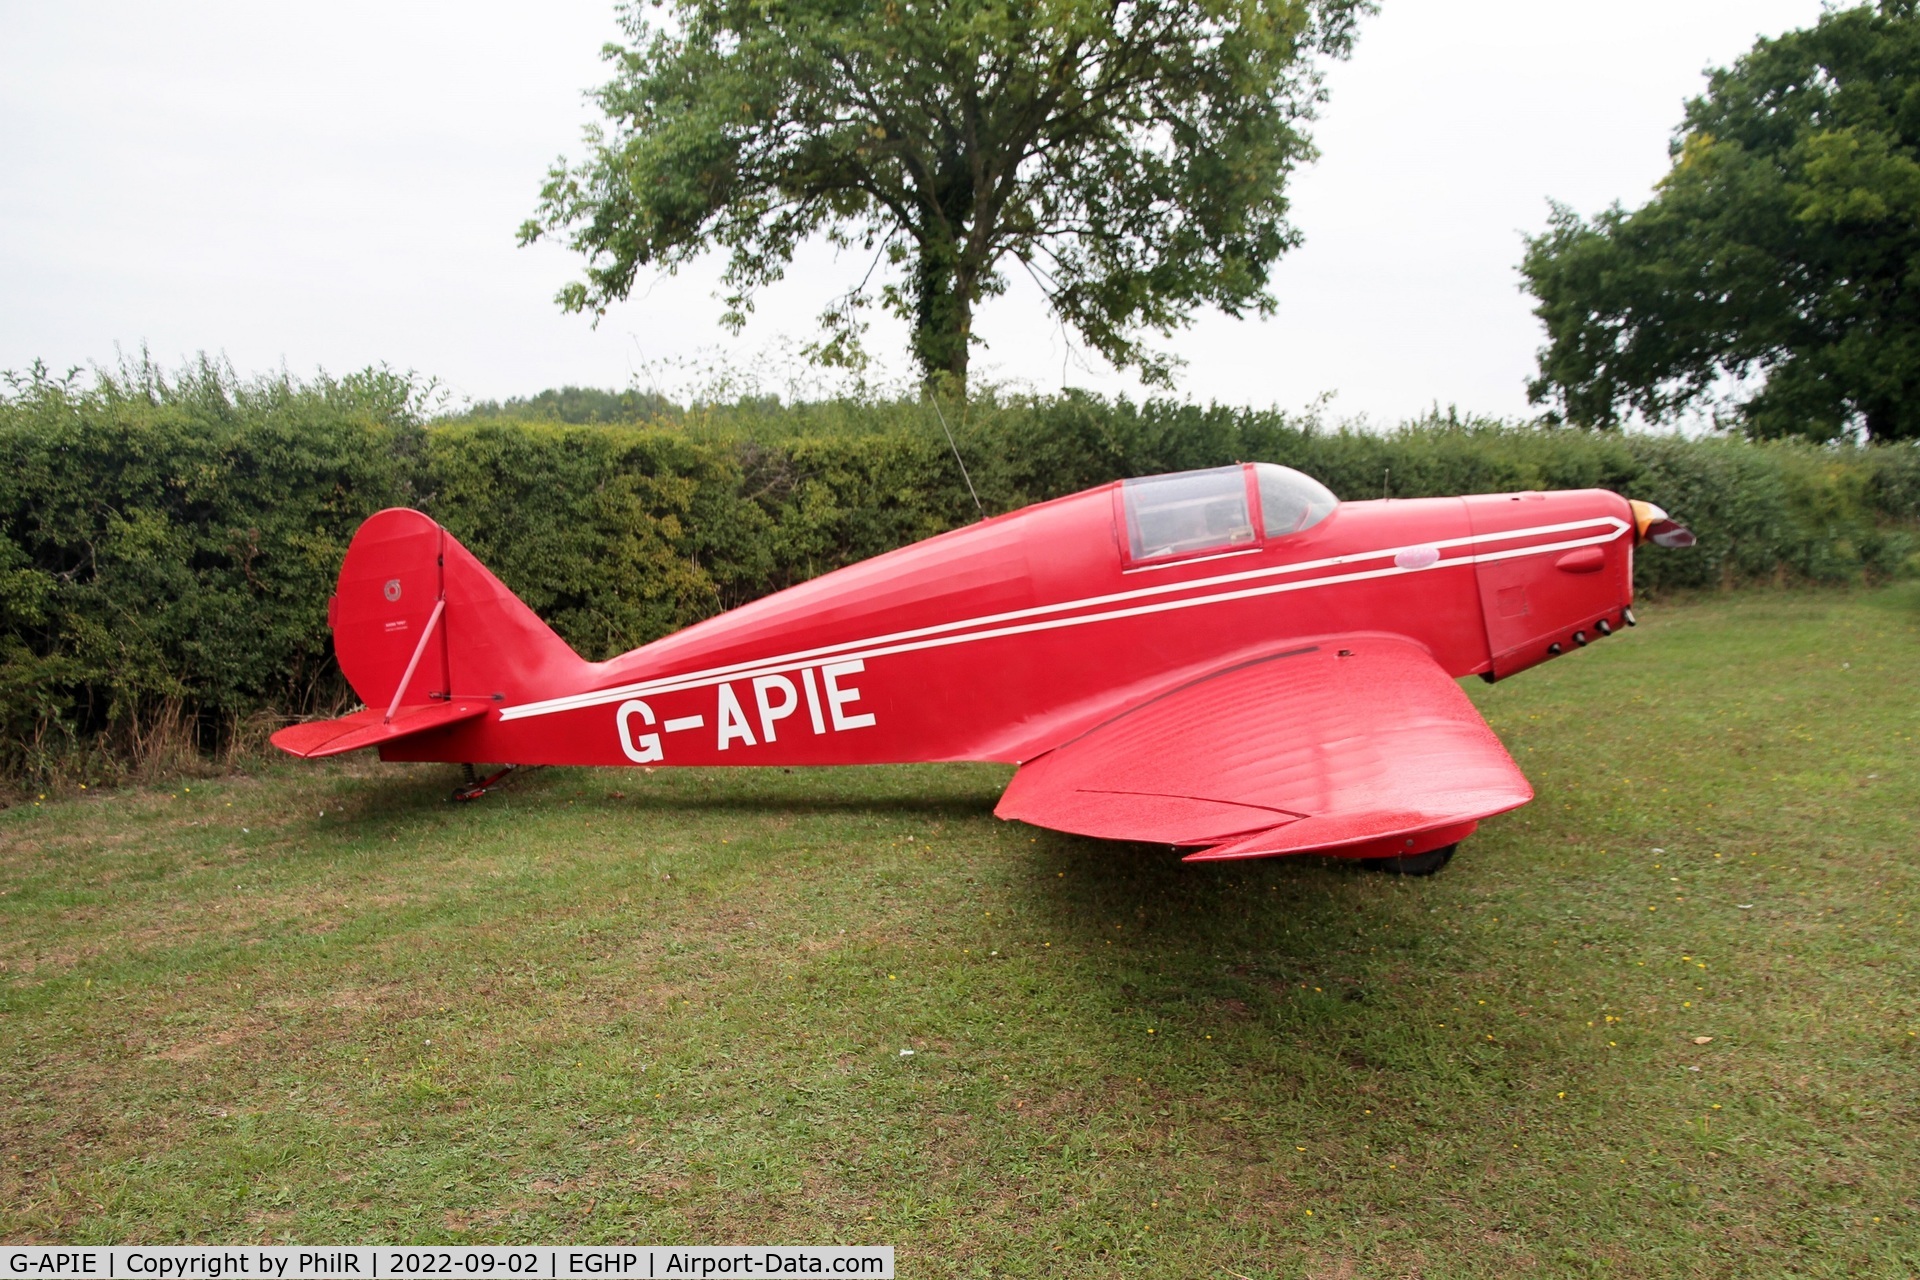 G-APIE, 1958 Tipsy Belfair C/N 535, G-APIE 1958 Avions Fairey SA Tipsy Belfair LAA Rally Popham 02.09.22